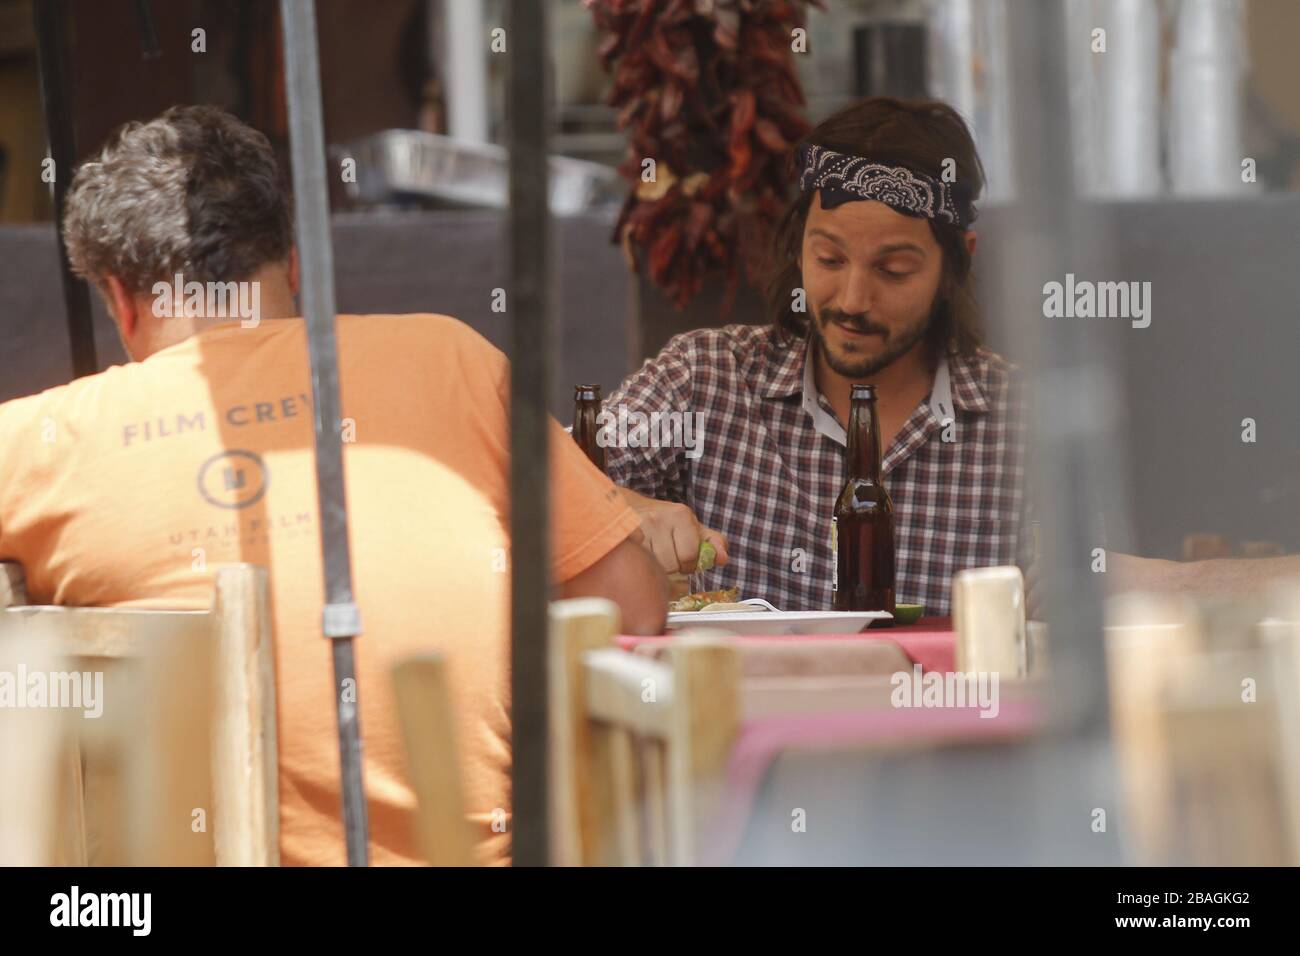 Diego luna comiendo tacos y bebiendo  en una comida  durante una  fiesta privada en restaurante mexicano en Hemosillo Sonora acompañado con el directo Stock Photo